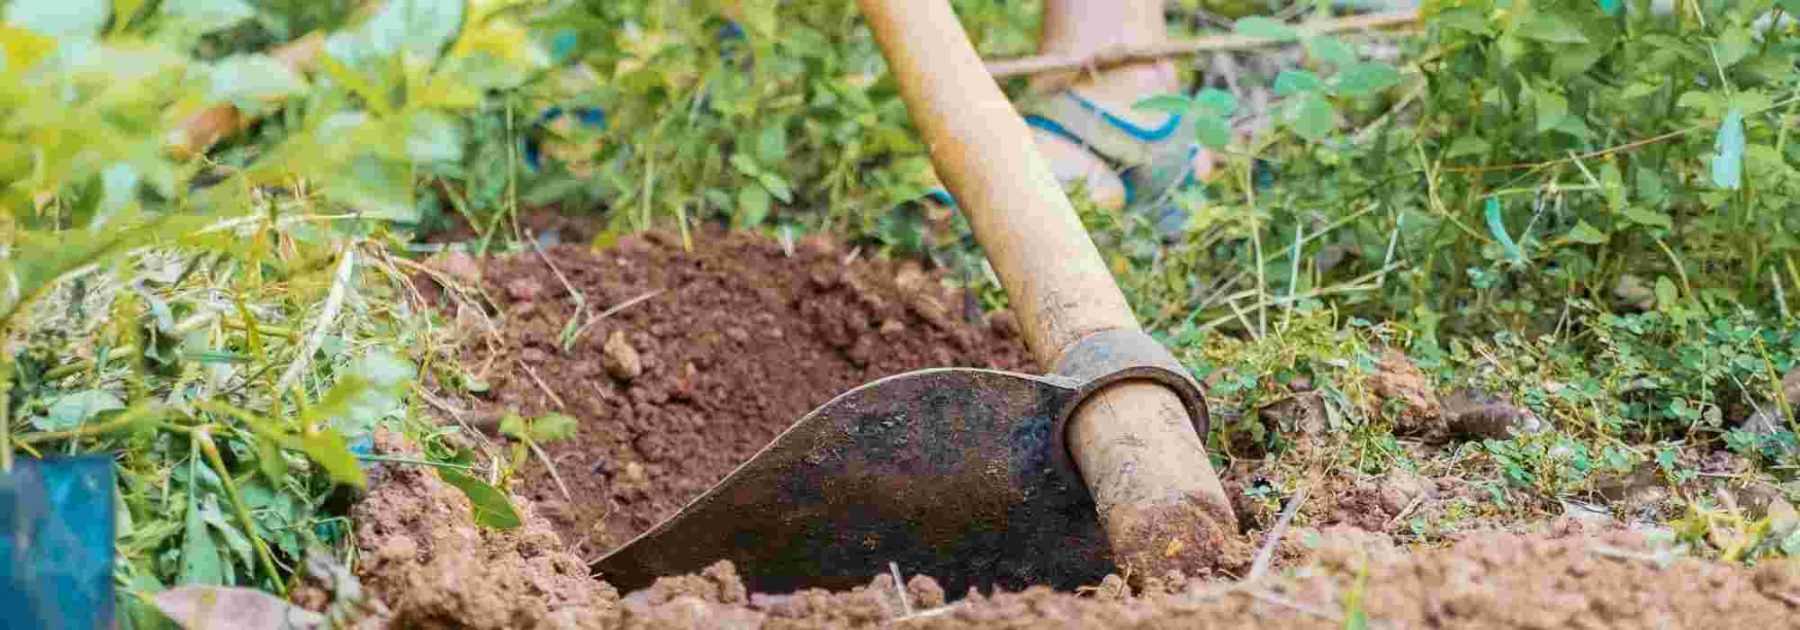 Les bons outils de jardin pour un jardinage efficace 